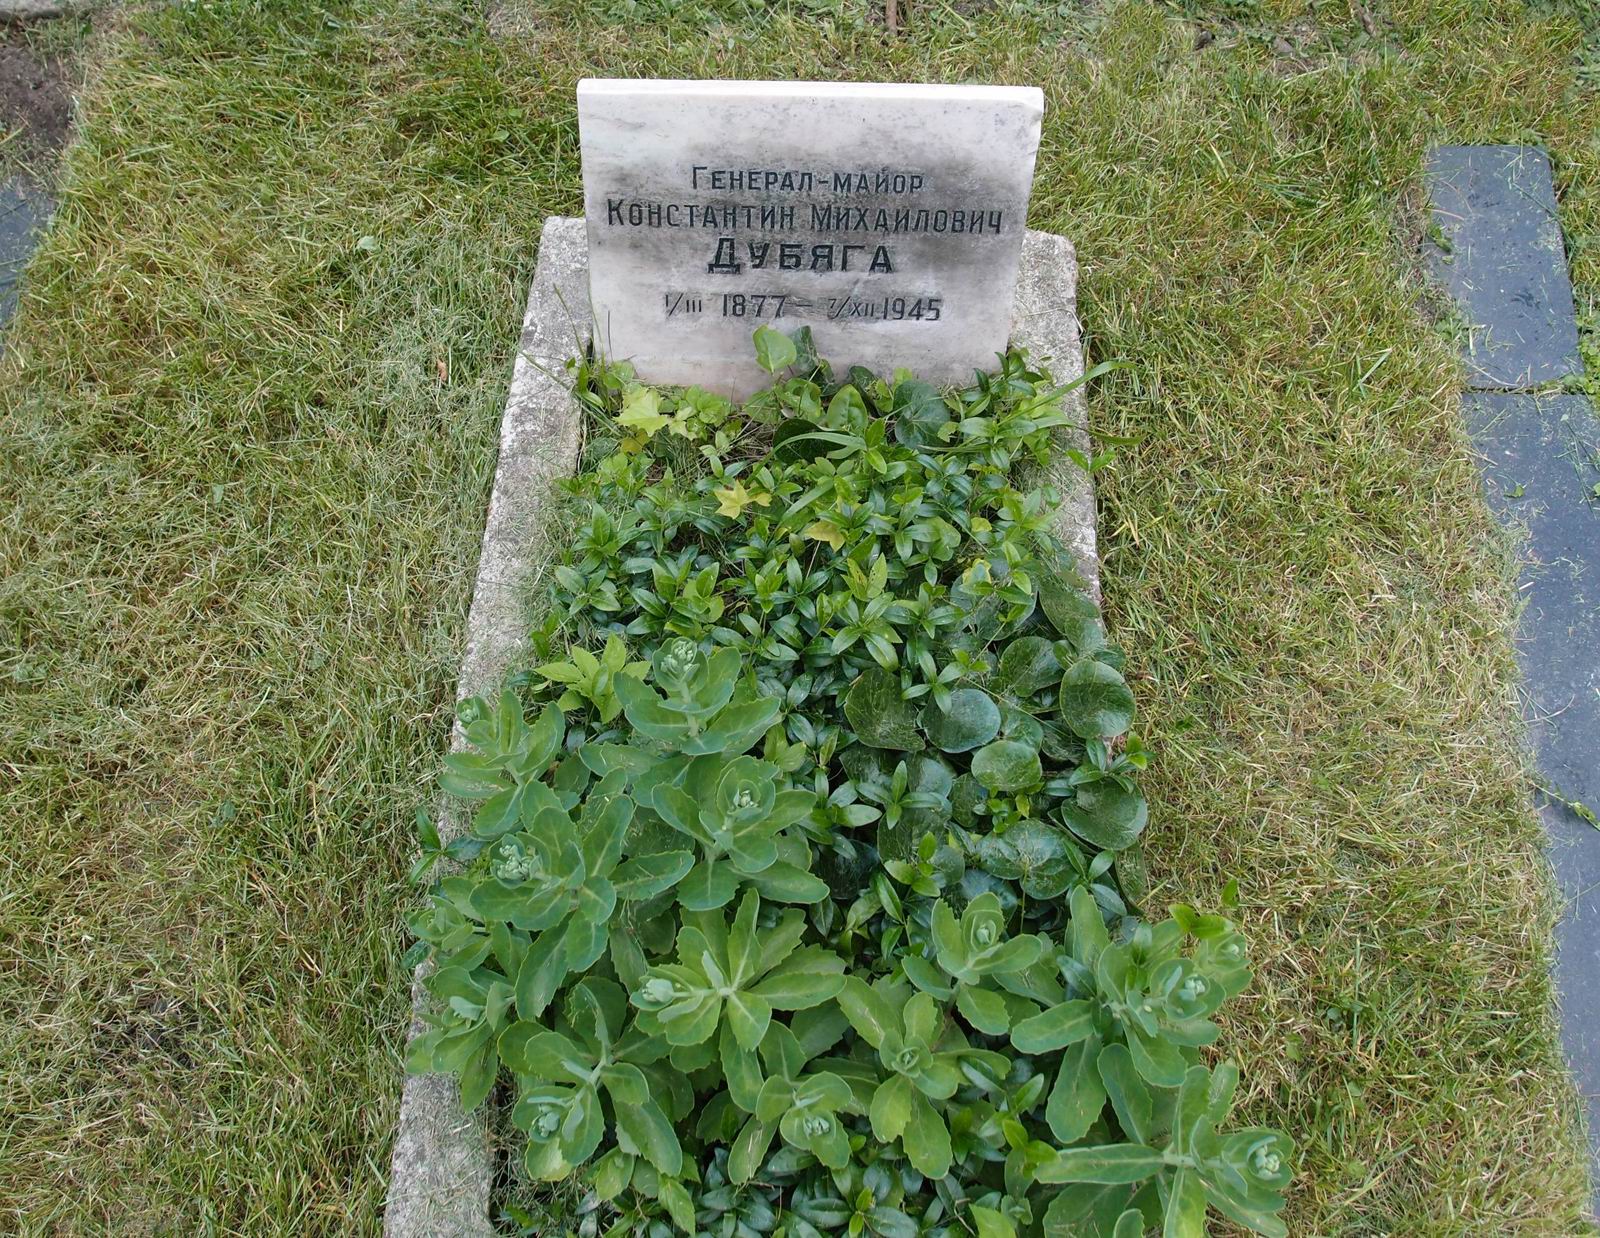 Памятник на могиле Дубяги К.М. (1877–1945), на Новодевичьем кладбище (4–13–12).